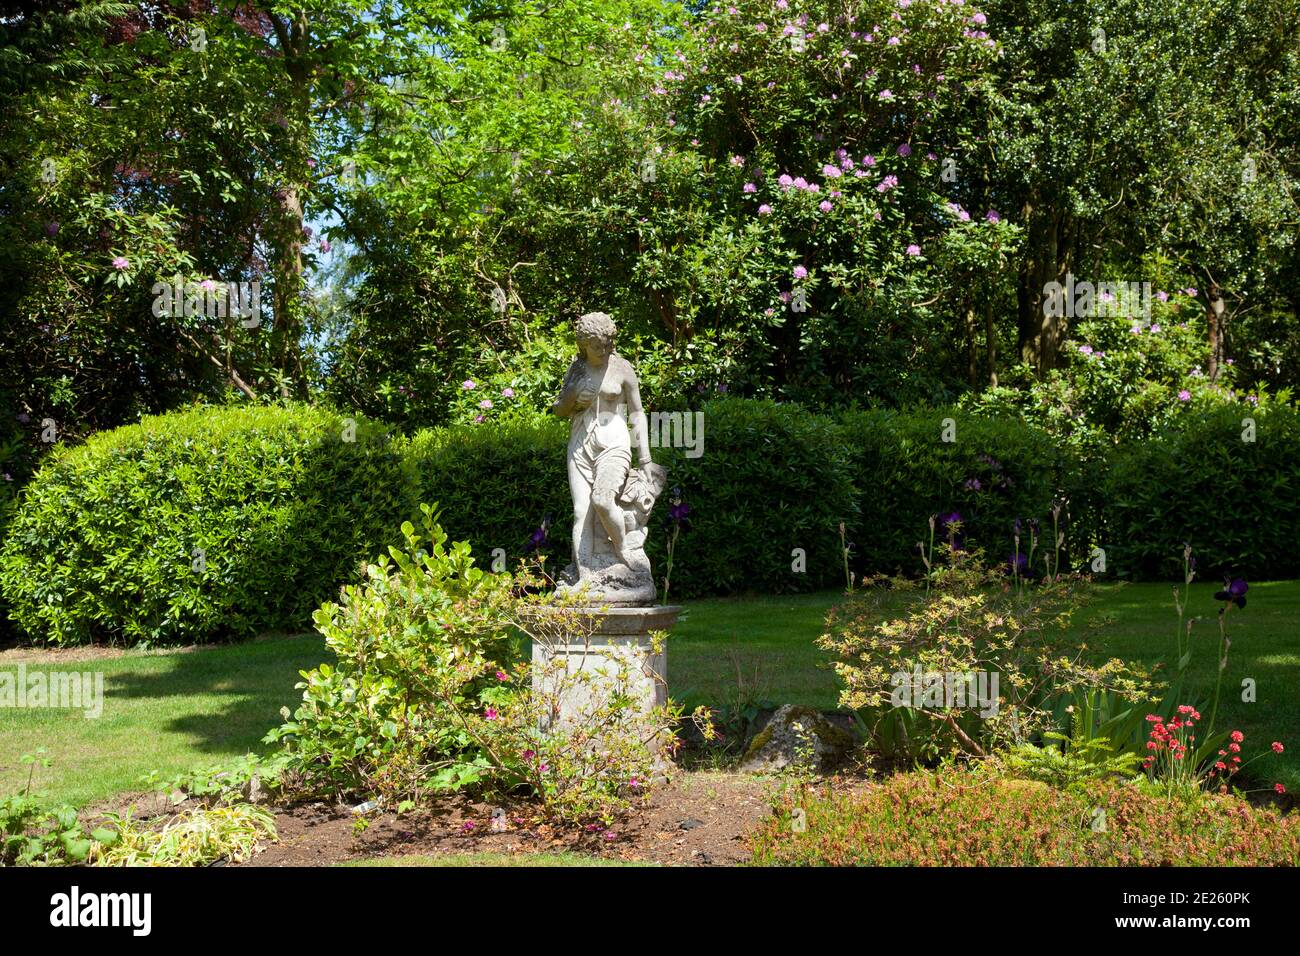 Jardin mature avec statue en pierre sur plinthe semi-nue femme Banque D'Images